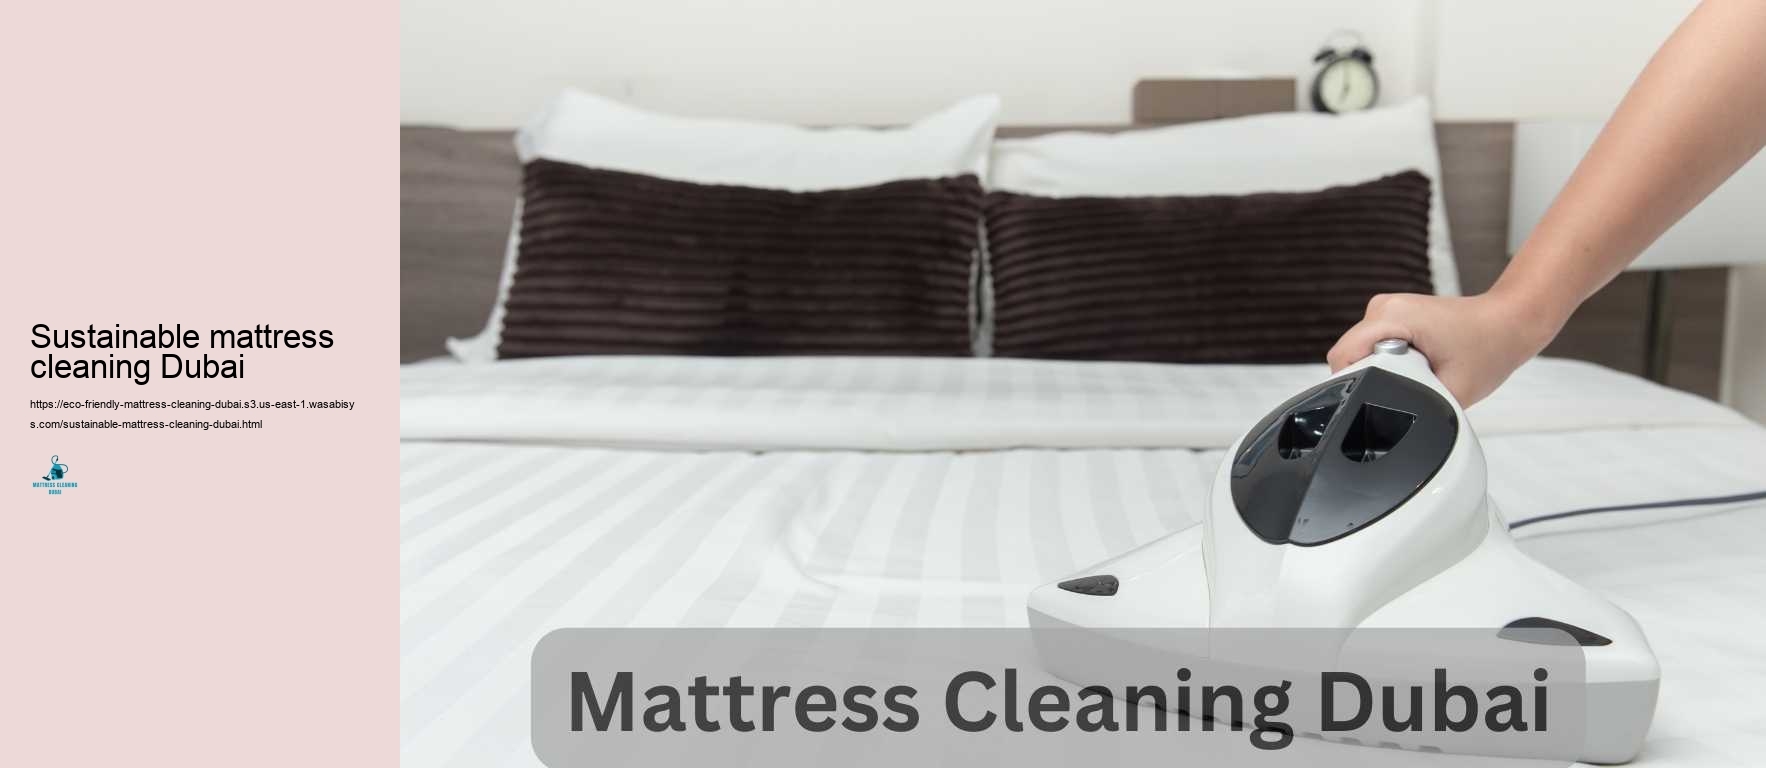 Sustainable mattress cleaning Dubai